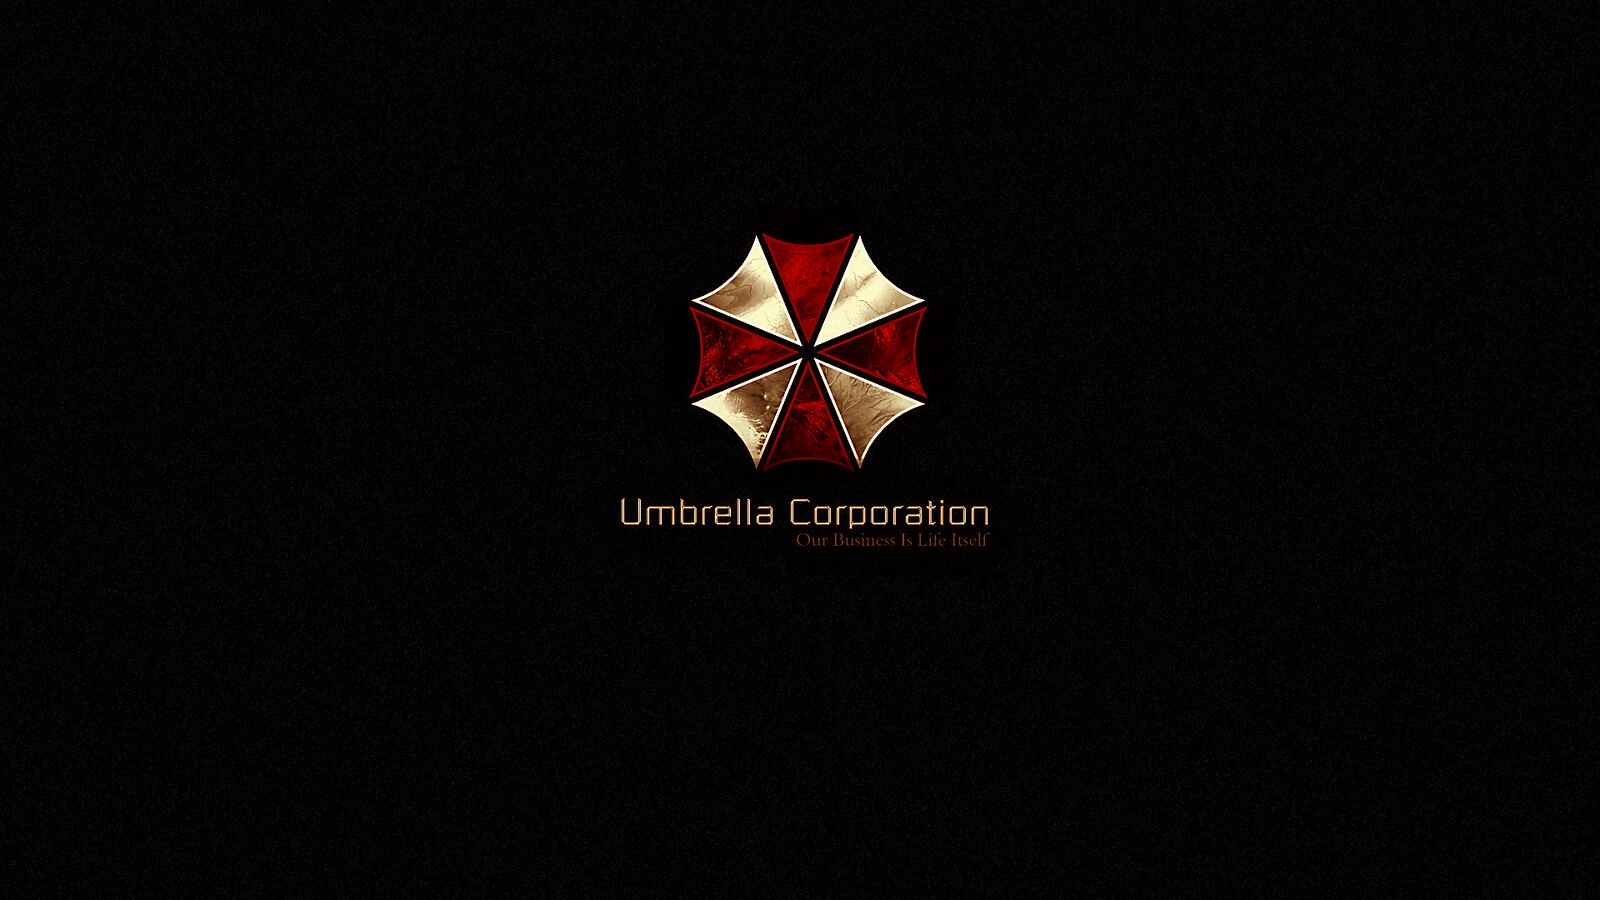 Umbrella Corporation Gold Logo Wallpaper, The Umbrella Corp…